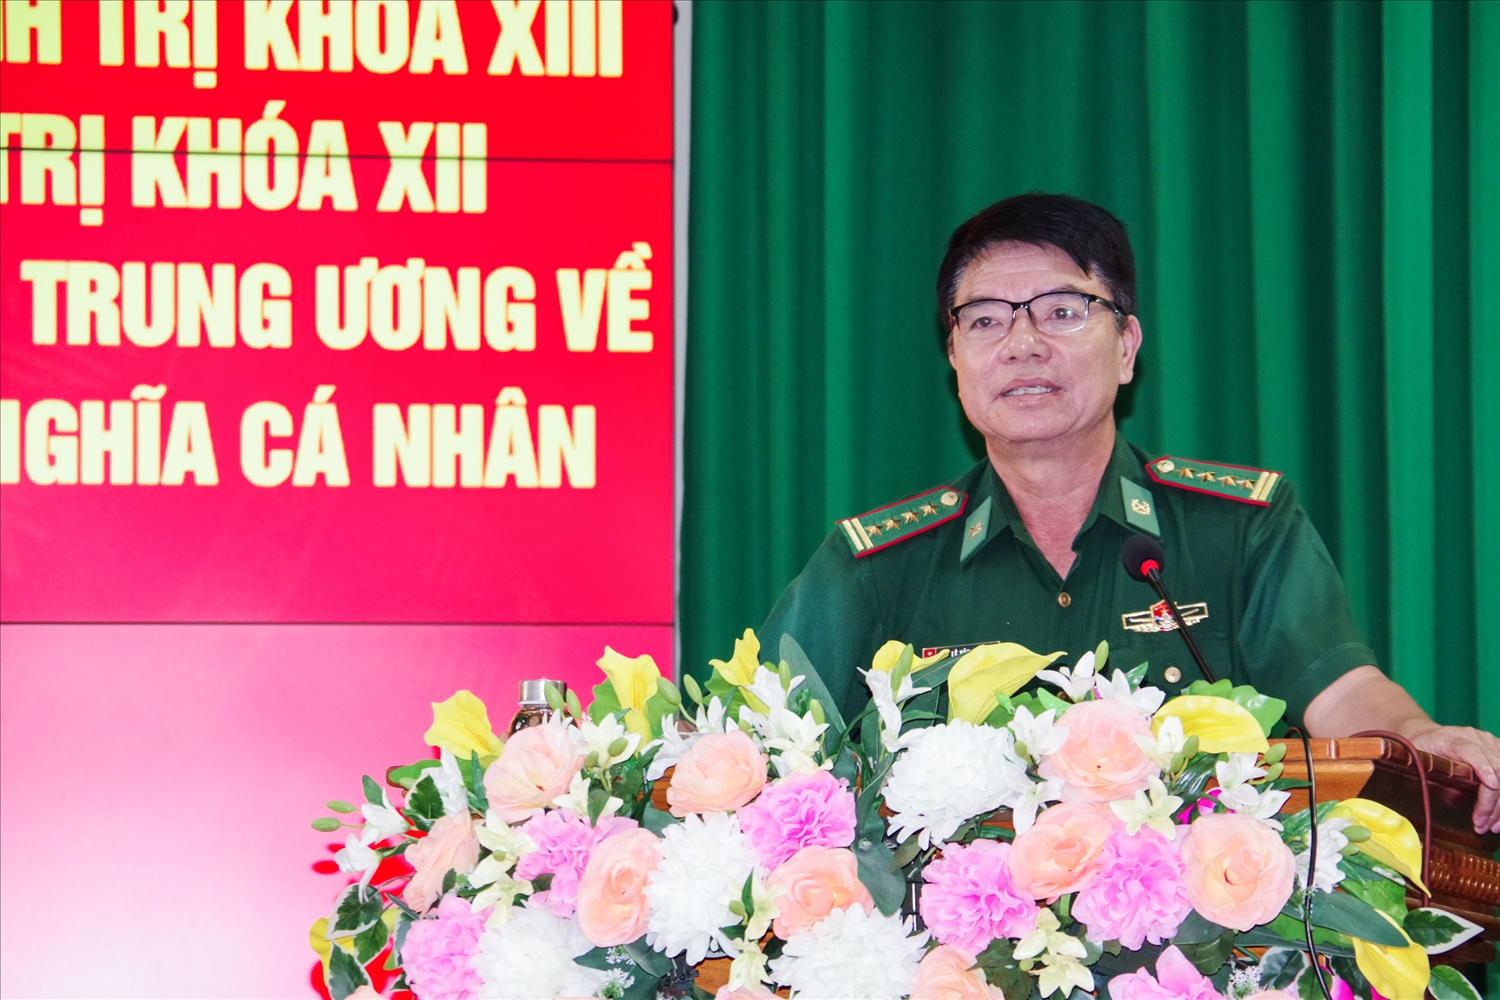 Đại tá Lê Văn Anh, Phó chính ủy BĐBP tỉnh phát biểu bế mạc hội nghị